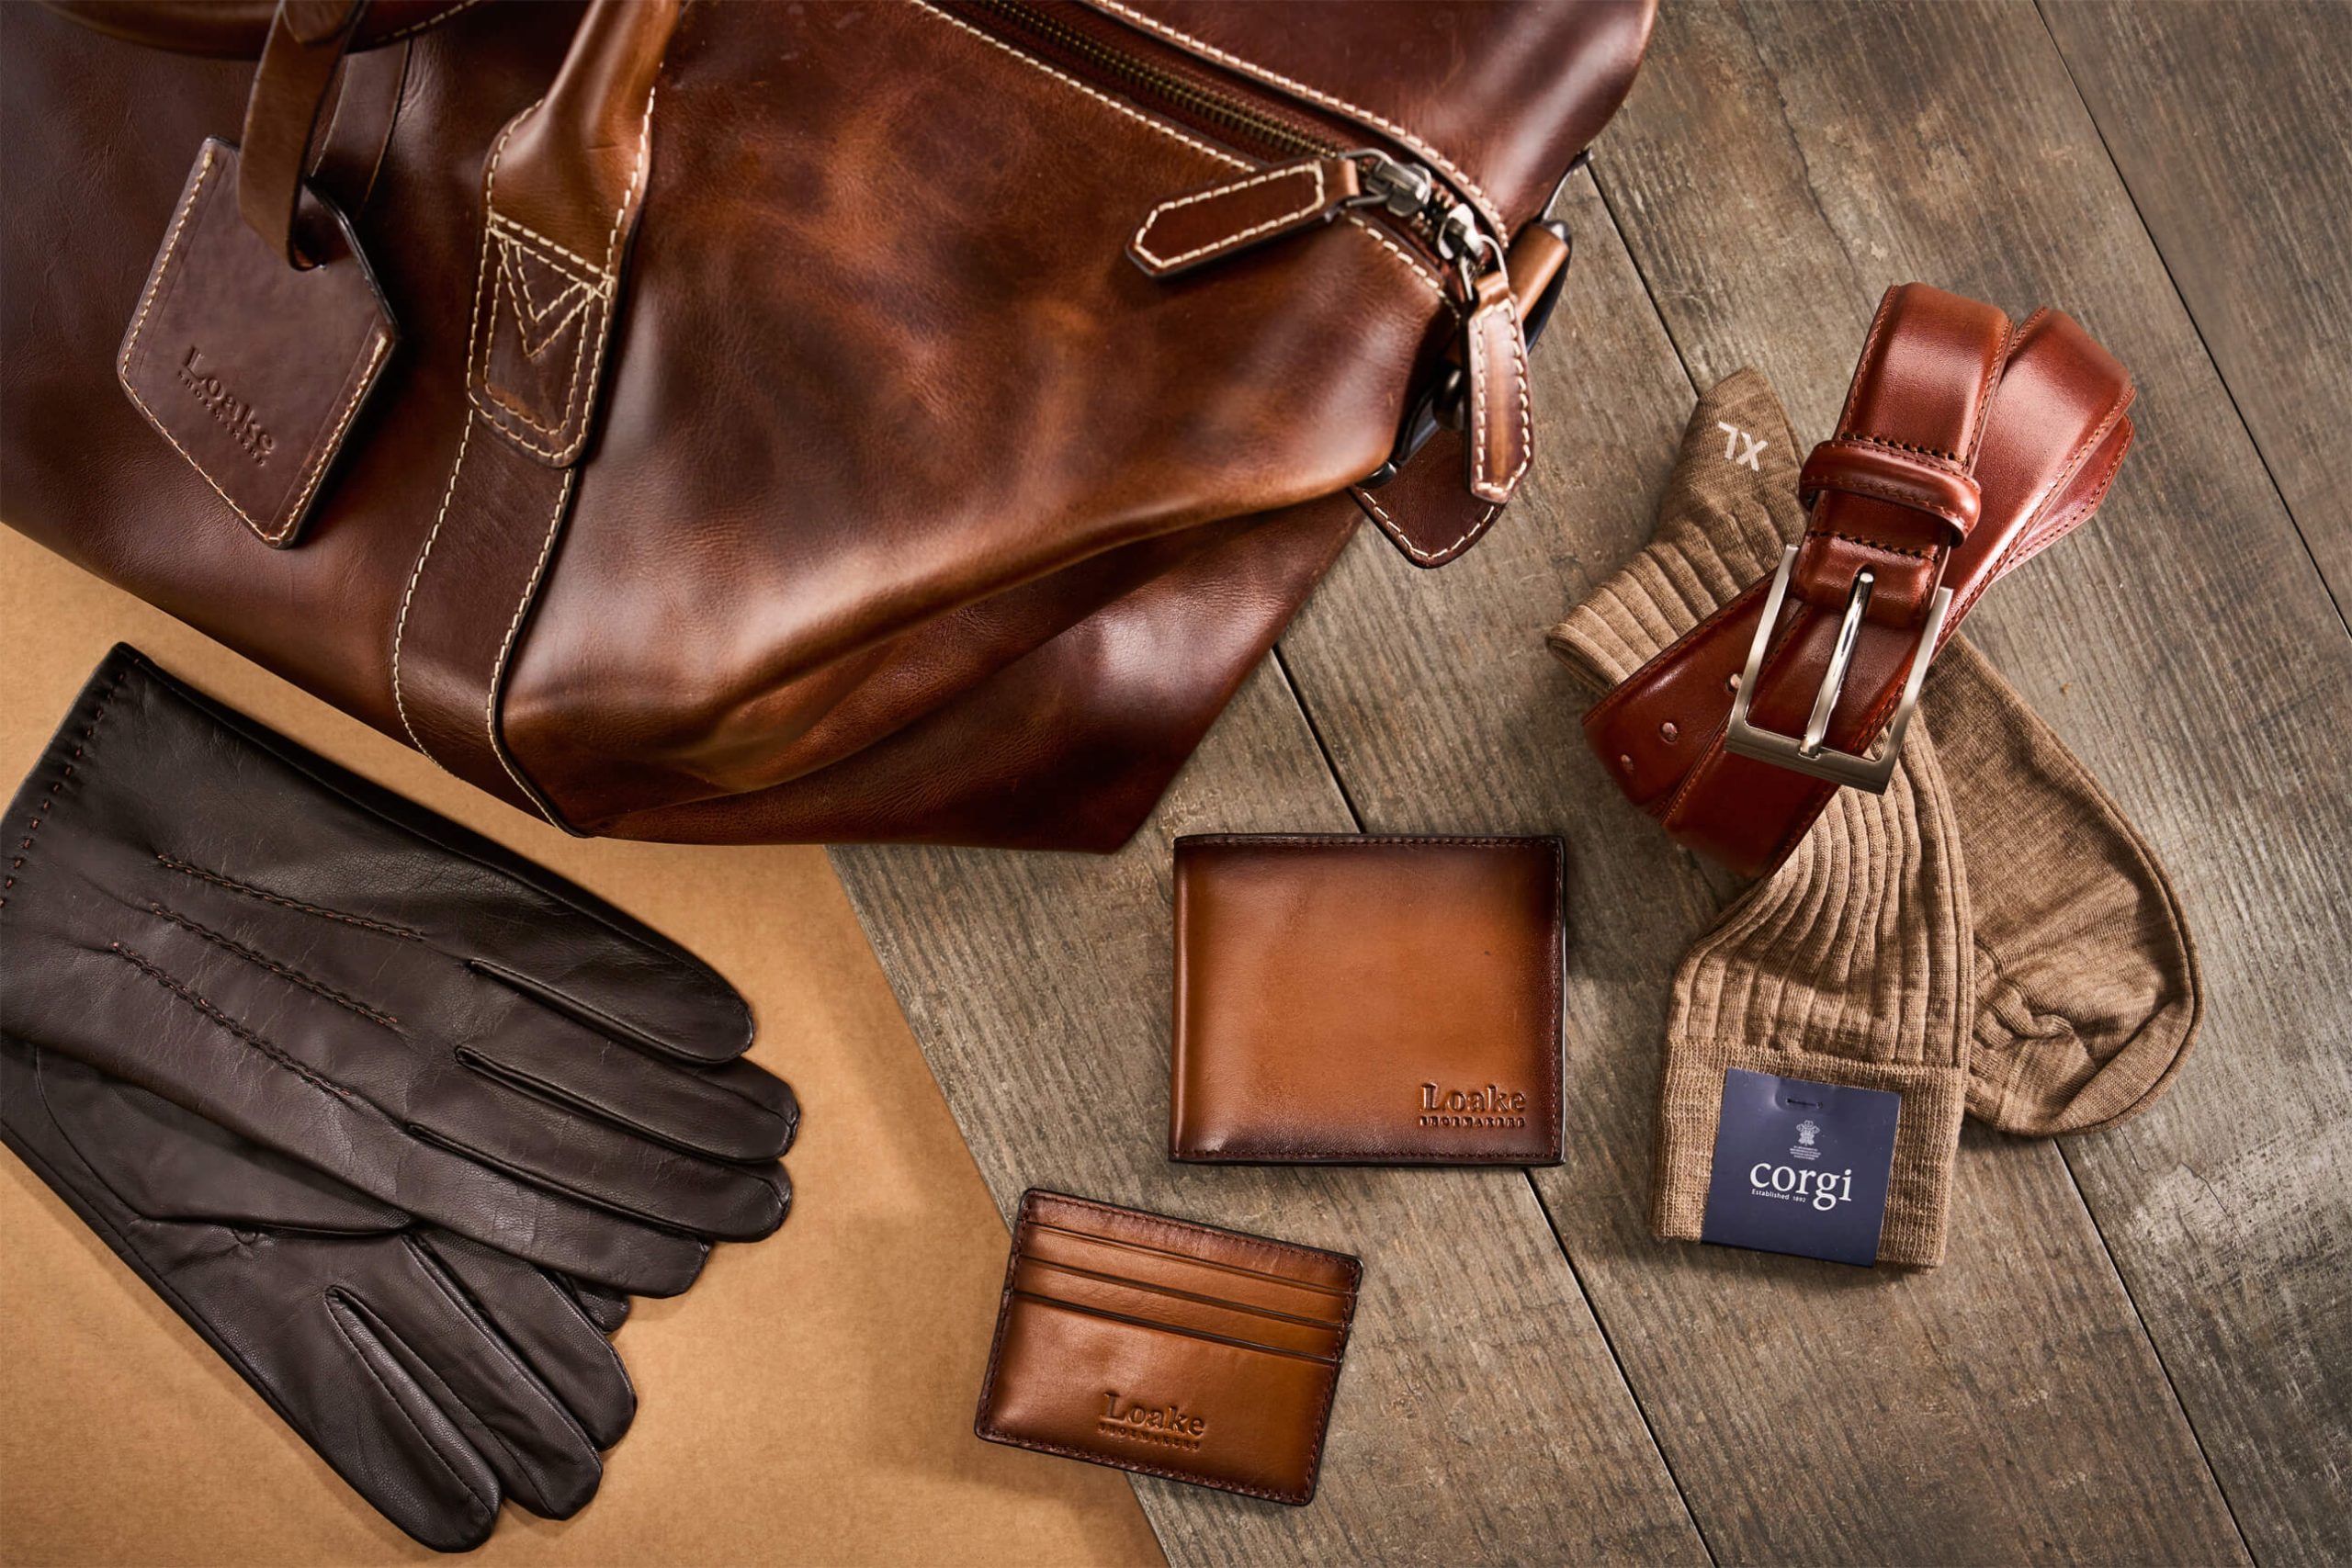 Loake leather bag, gloves, wallet, belt and cotton socks